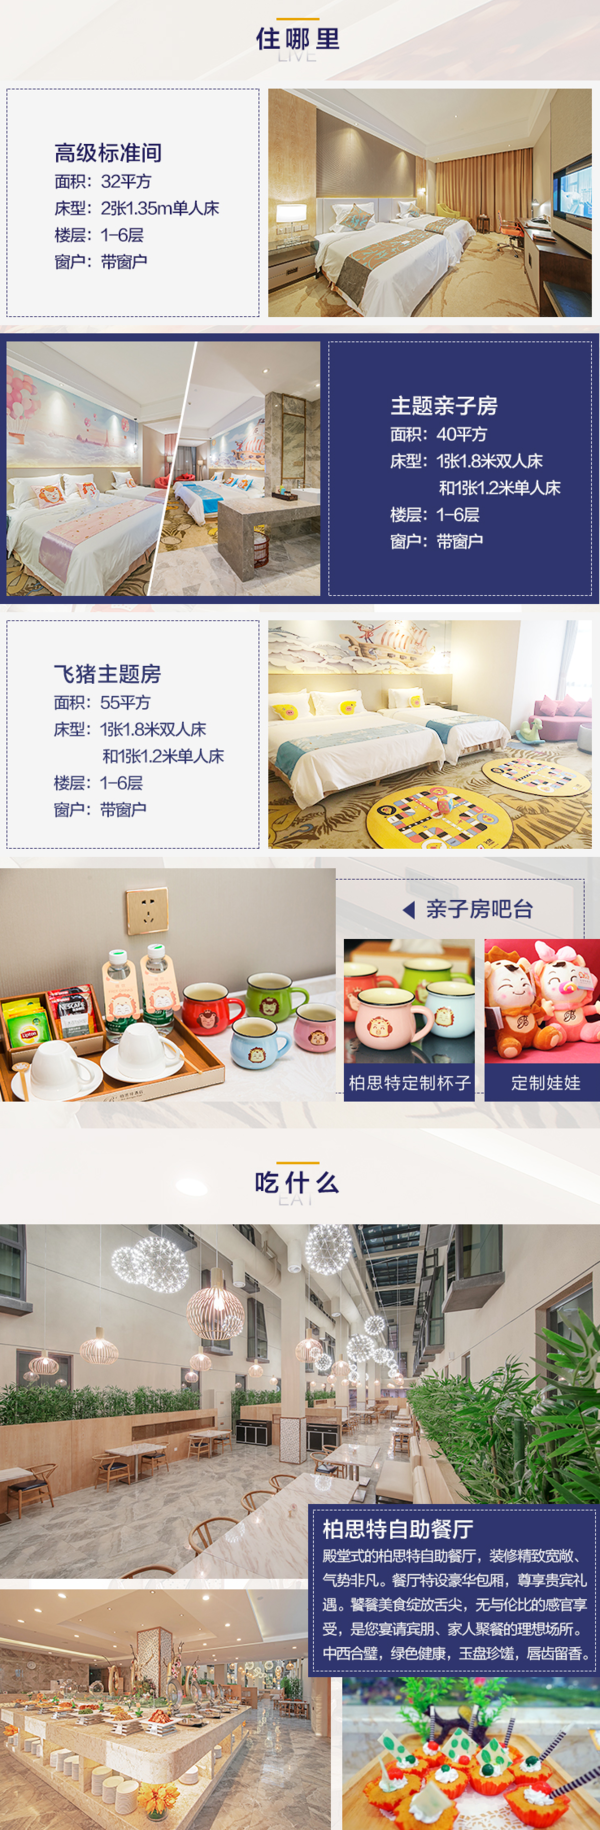 上海迪士尼周边 柏思特亲子主题酒店1晚+2大1小早餐+迪士尼免费接送